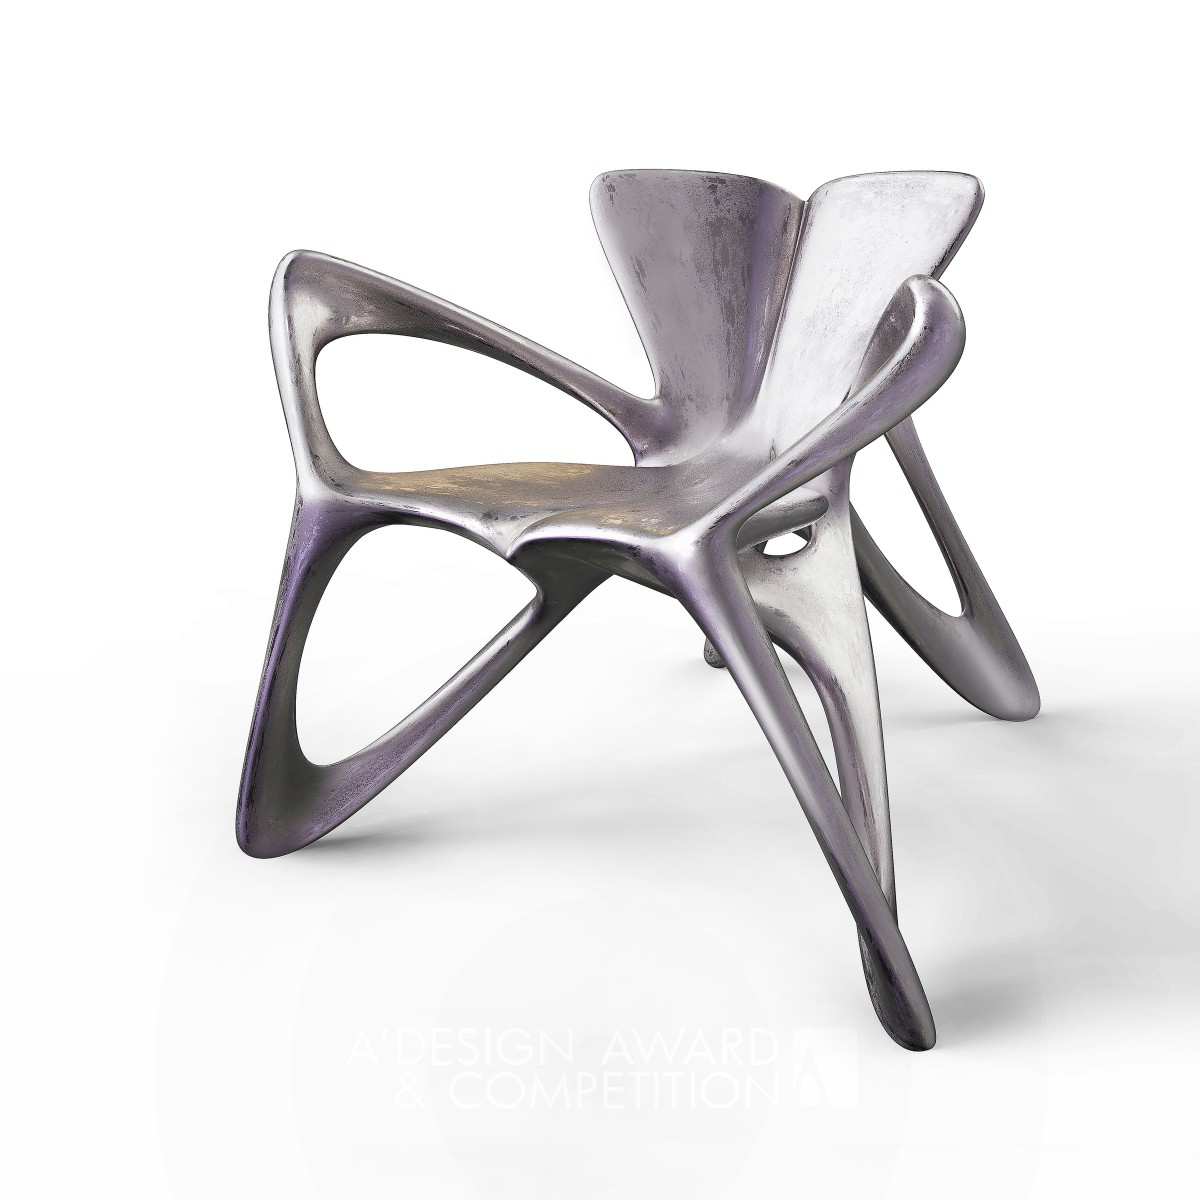 Butterfly Chair by Wei Jingye and Wang Yiqin Bronze Furniture Design Award Winner 2021 